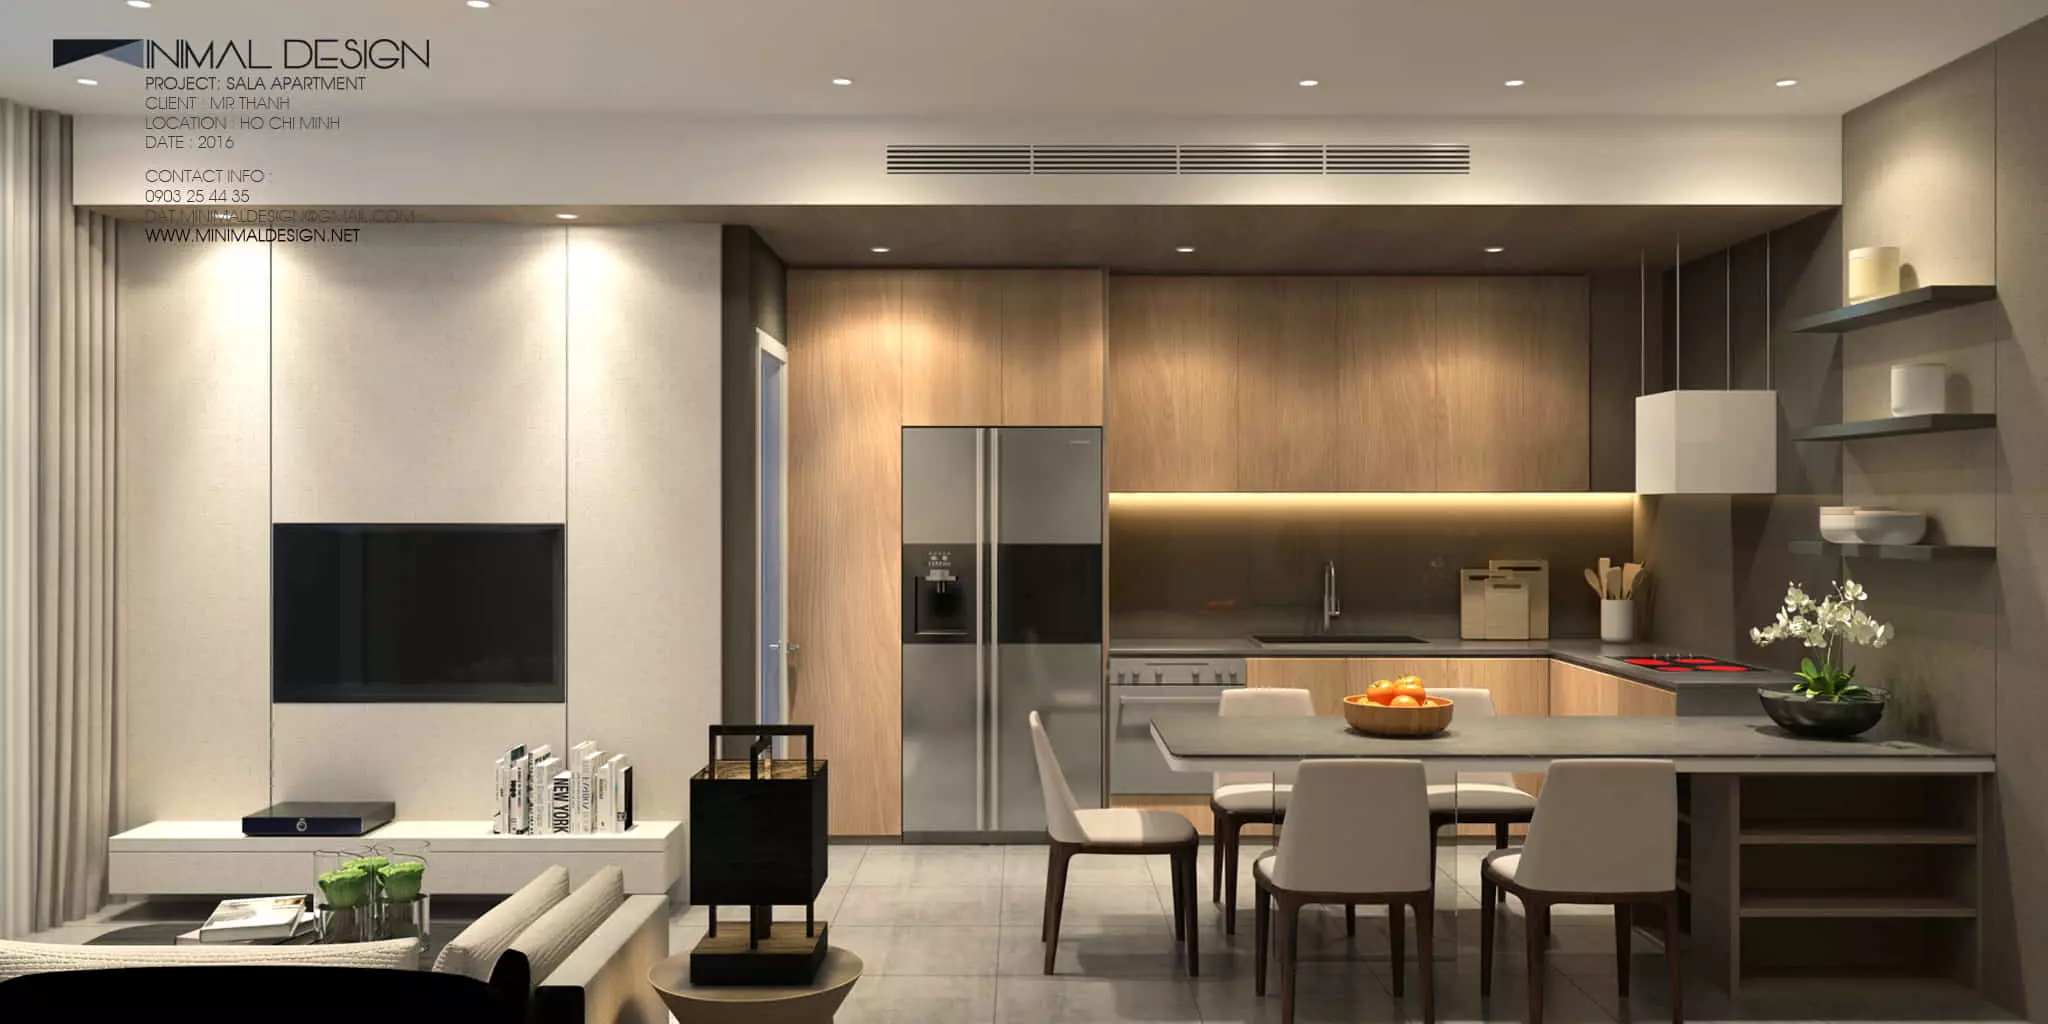 thiết kế nội thất chung cư phong cách tối giản đang dần trở nên thịnh hành, đặc biệt phổ biến nhất tại các chung cư cao cấp hiện nay bởi sự tinh tế sang trọng và tạo không gian sống đẳng cấp nhất cho gia chủ